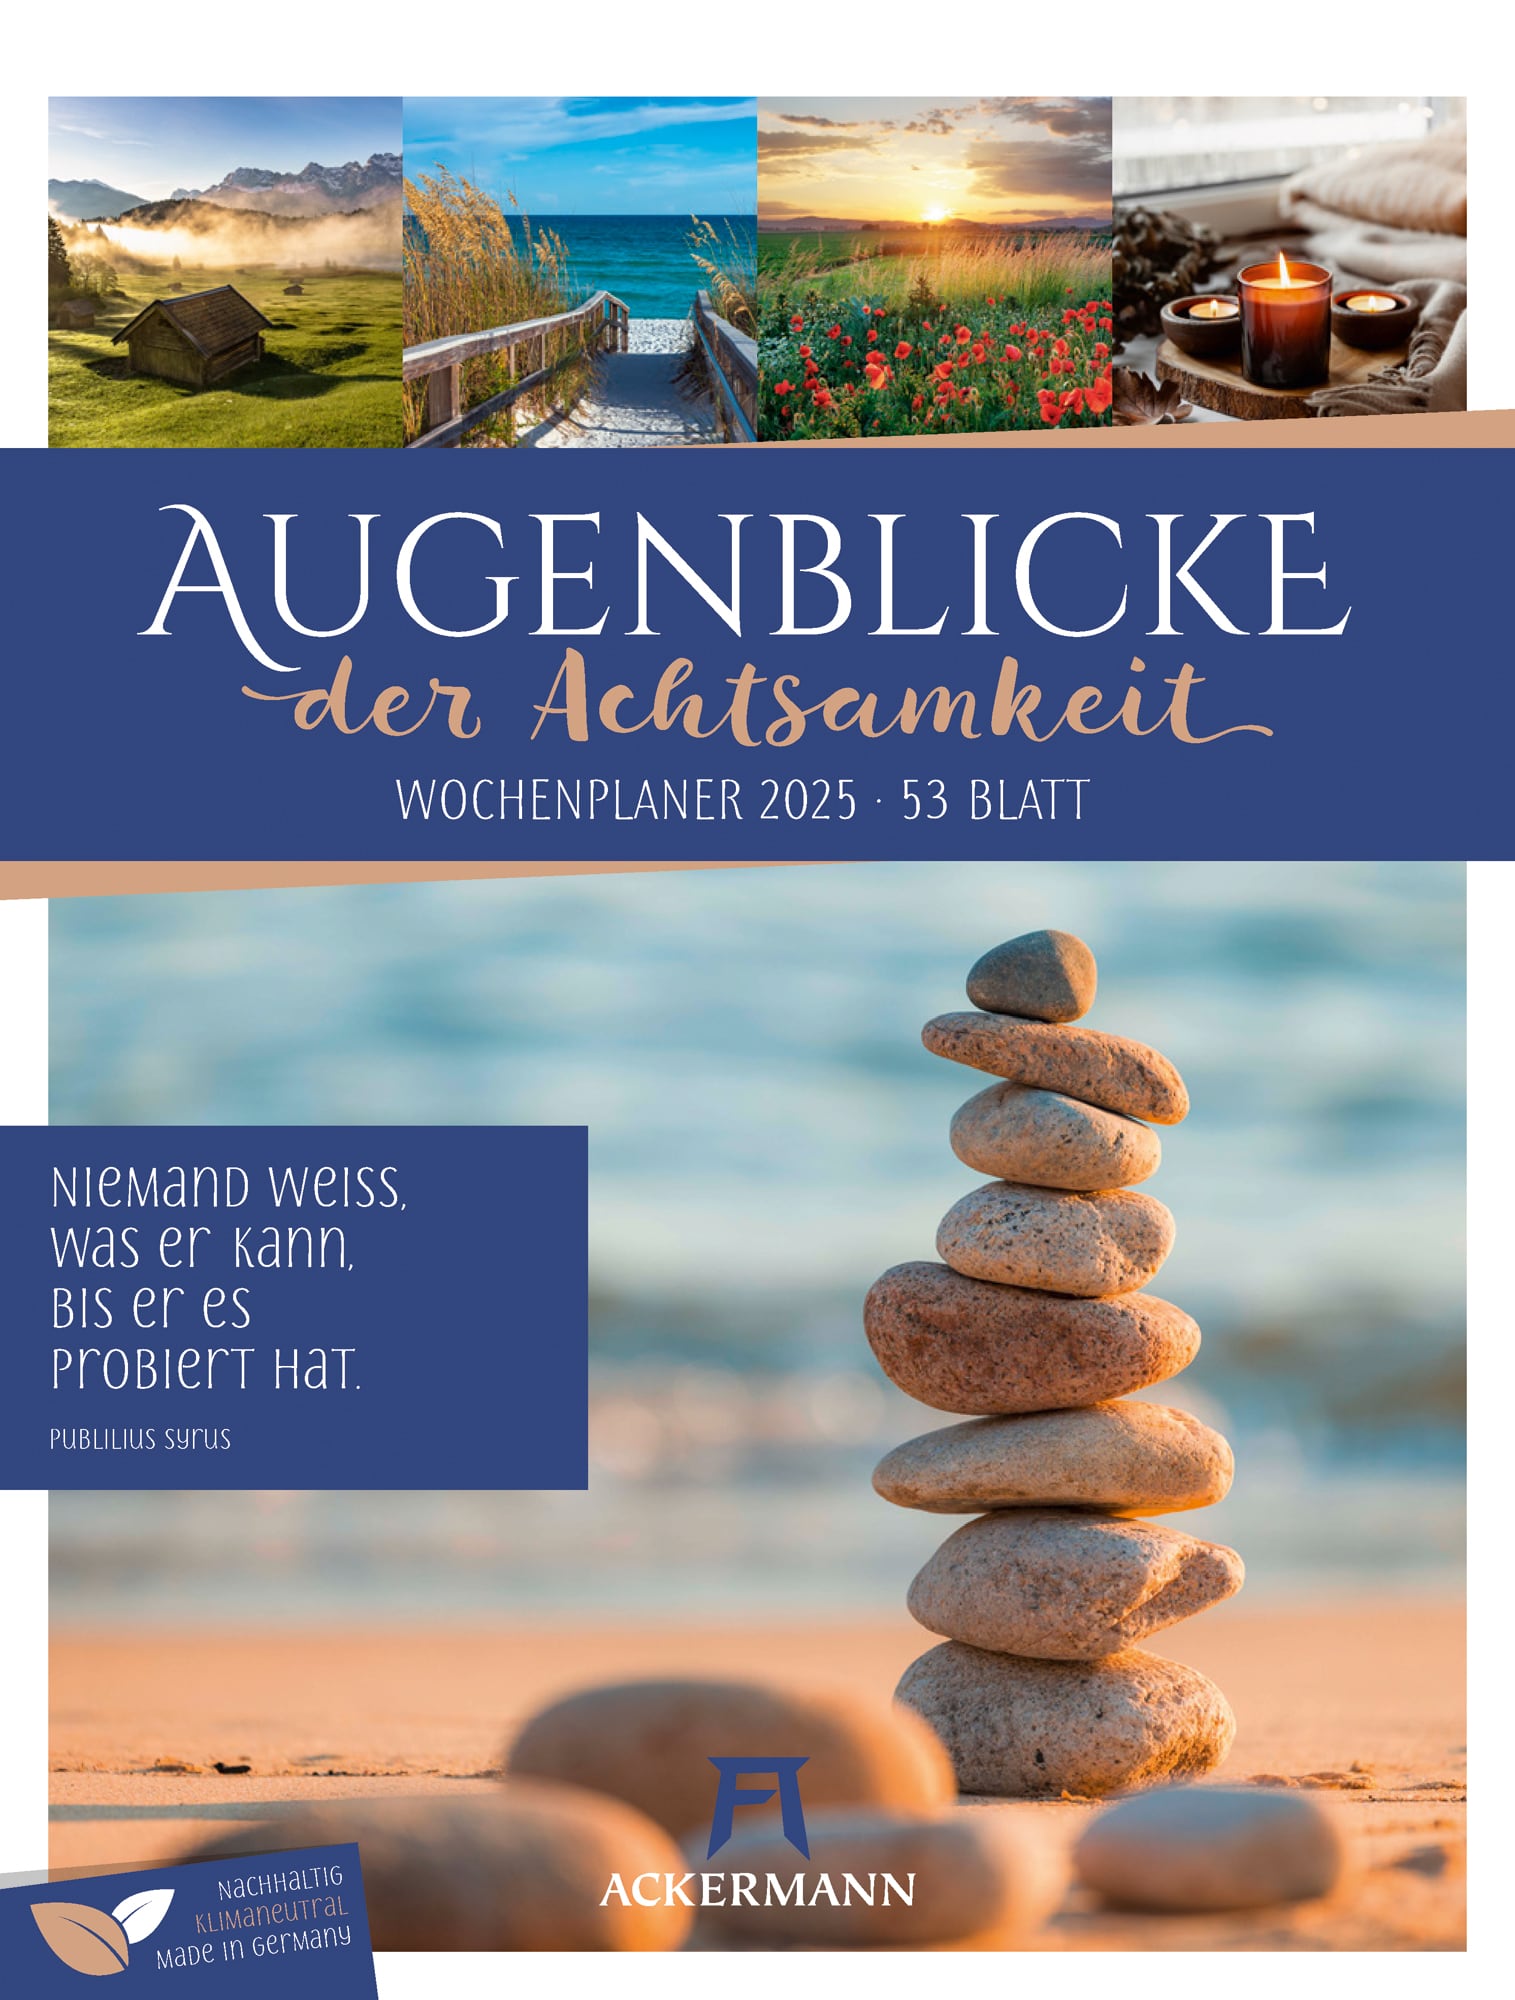 Ackermann Kalender Augenblicke - Wochenplaner 2025 - Titelblatt